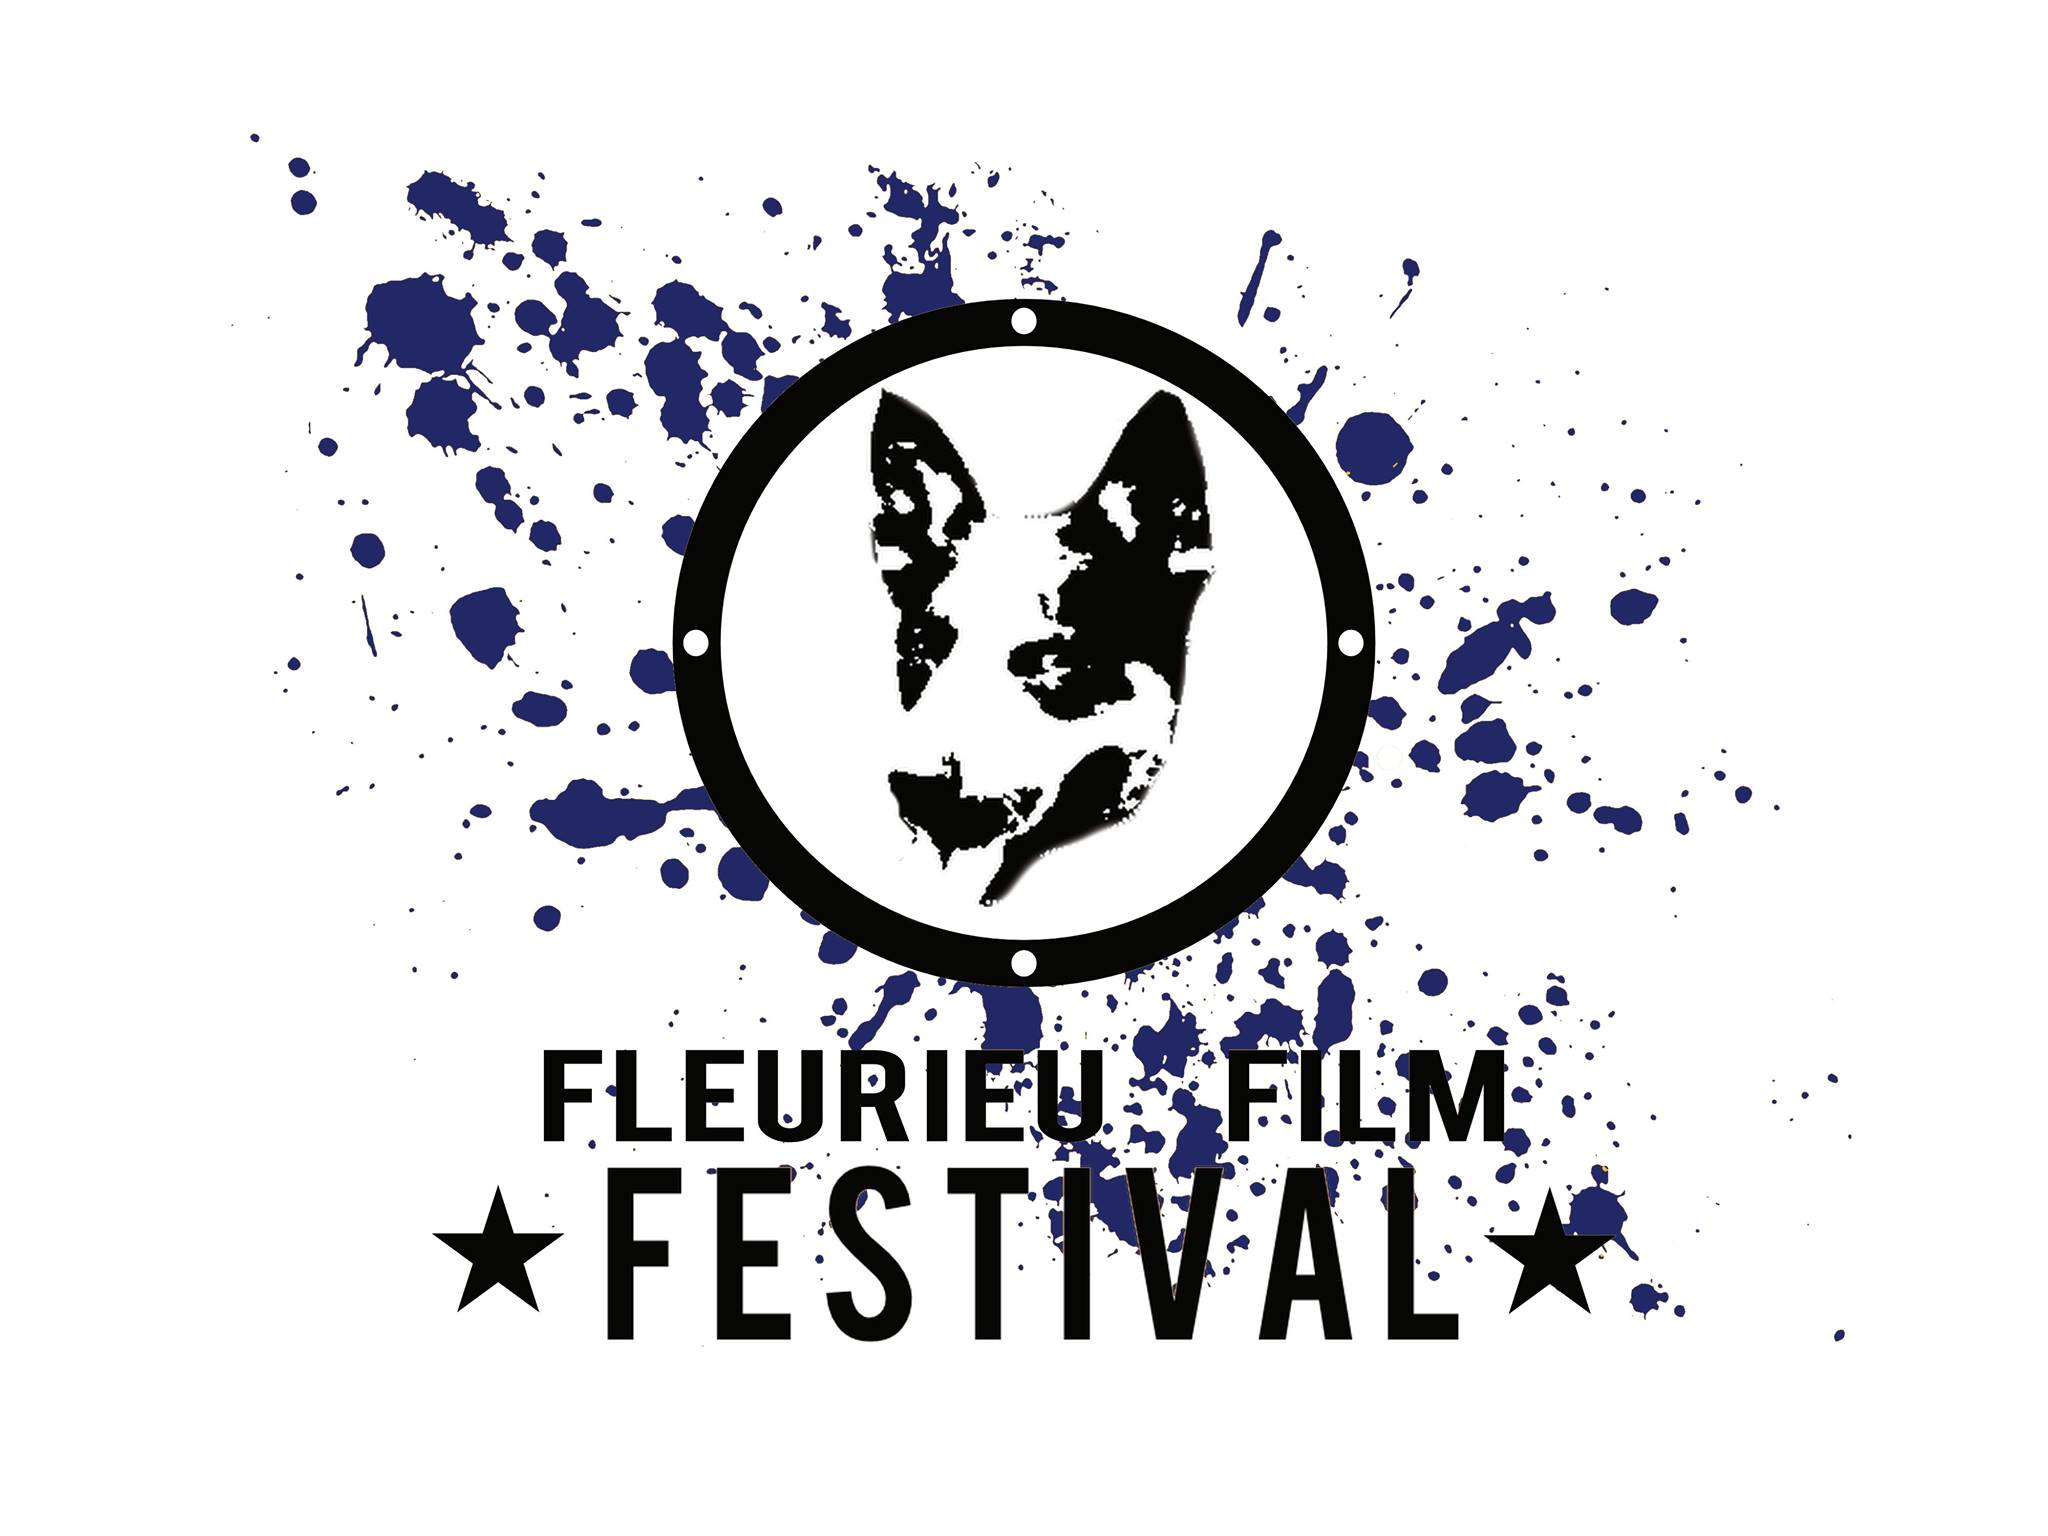 Fleurieu Film Festival - South Australia Travel